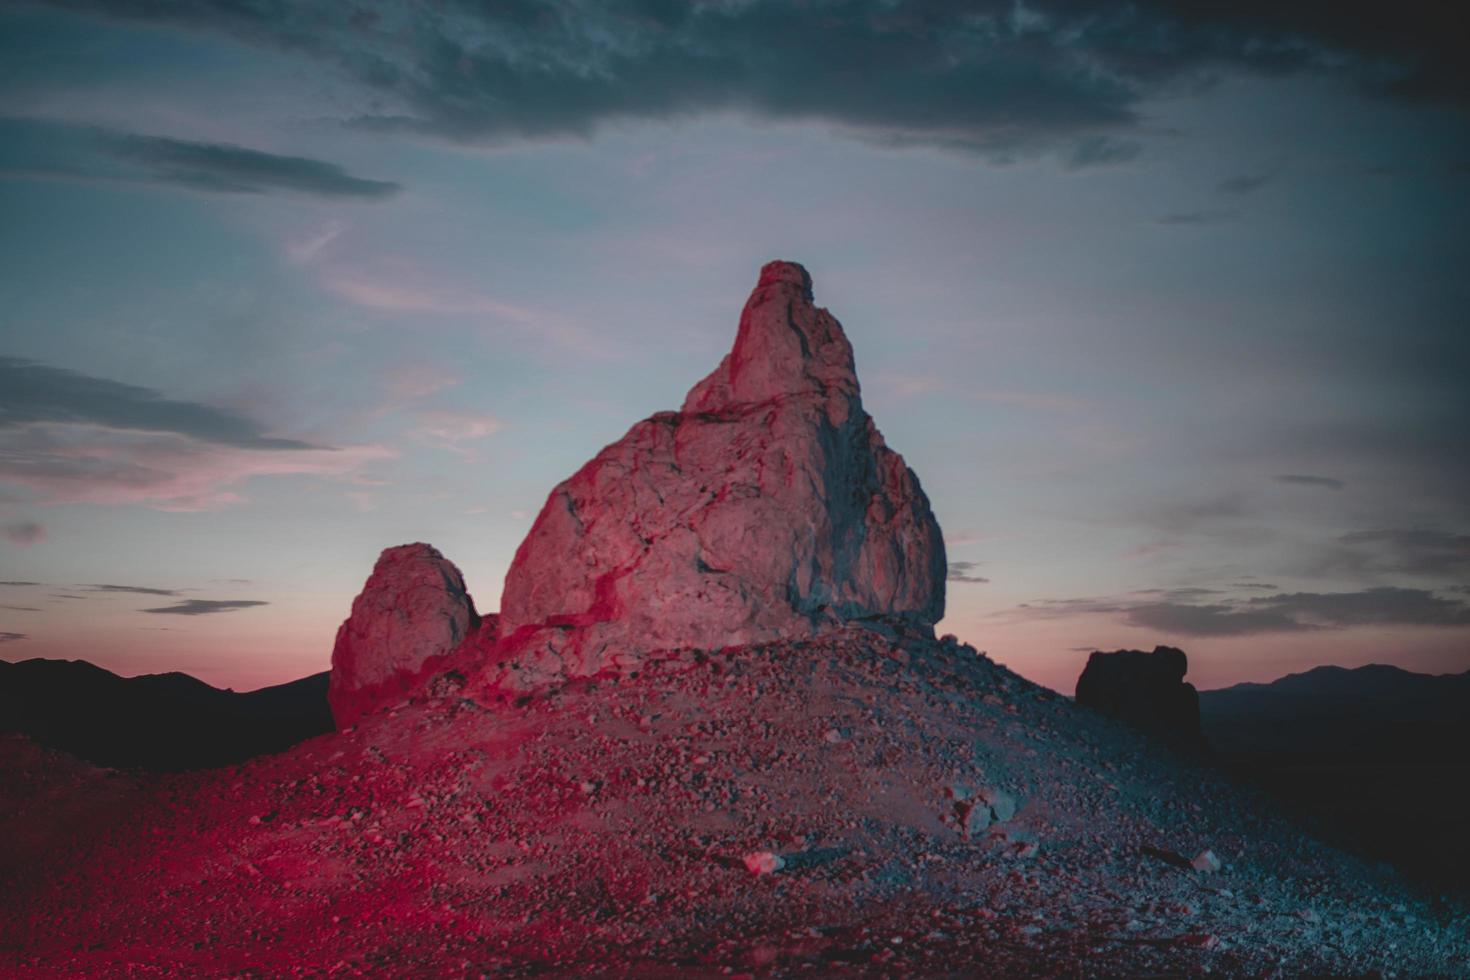 Illuminated desert rock formation photo